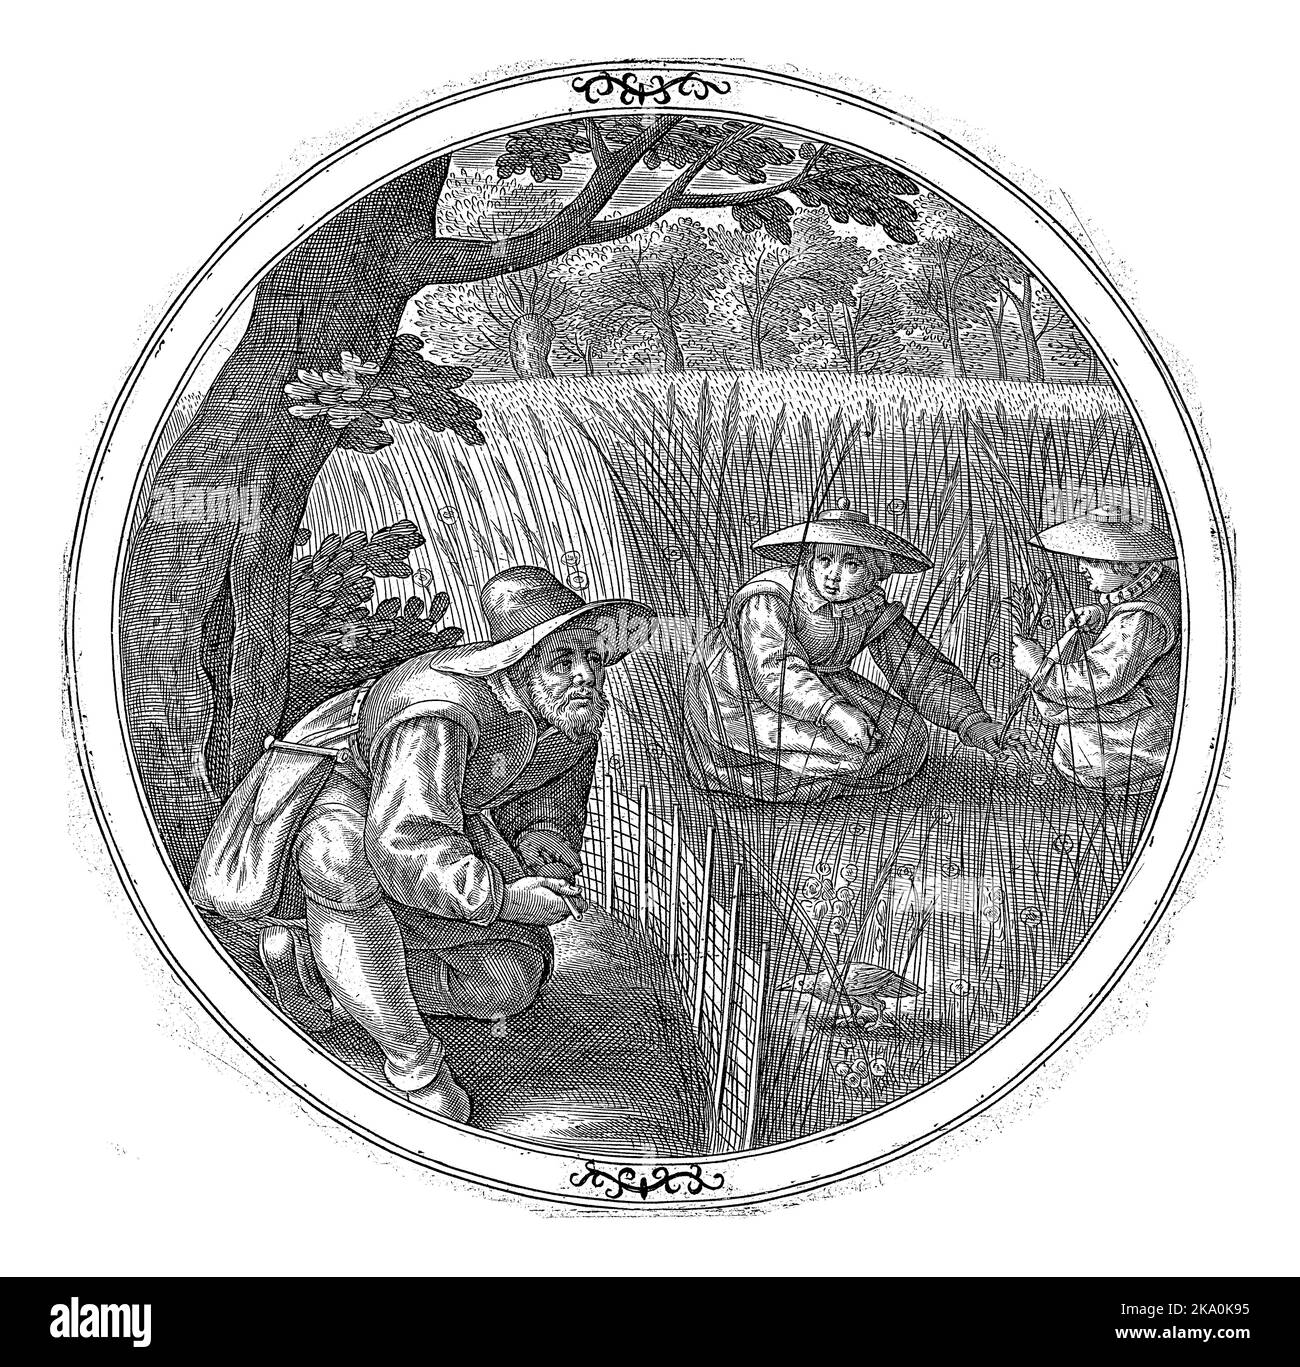 Kwakkelaar, anonyme, 1550 - 1610 Un ornithologue est assis sur le bord d'un champ de maïs et se caille avec son sifflet osseux. Dans le champ de blé deux femmes a Banque D'Images